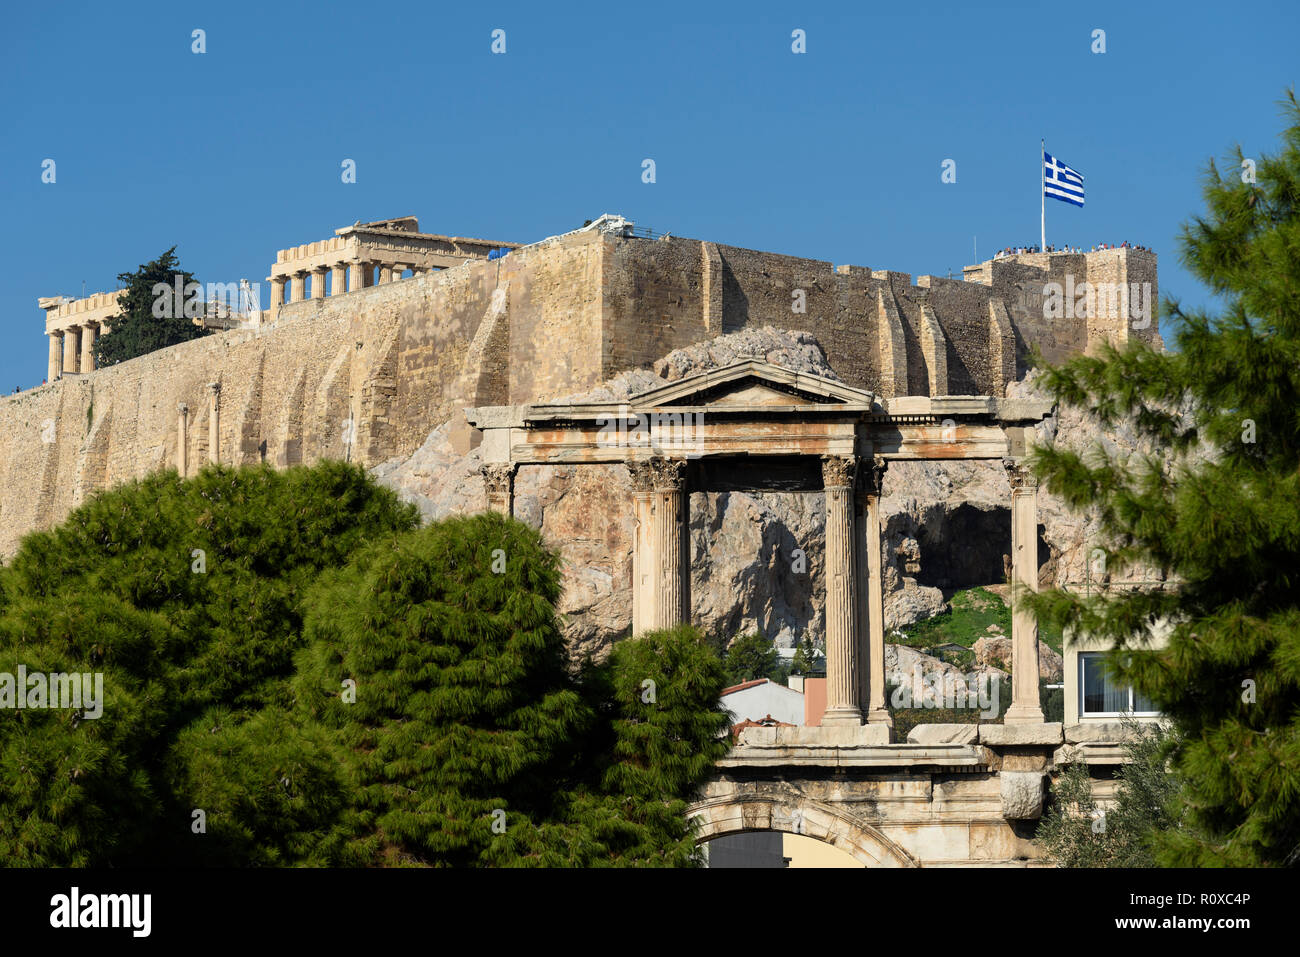 Atene. La Grecia. Arco romano di Adriano aka la Porta di Adriano, con il Partenone e Acropoli in background. (Frontone di livello superiore). Foto Stock